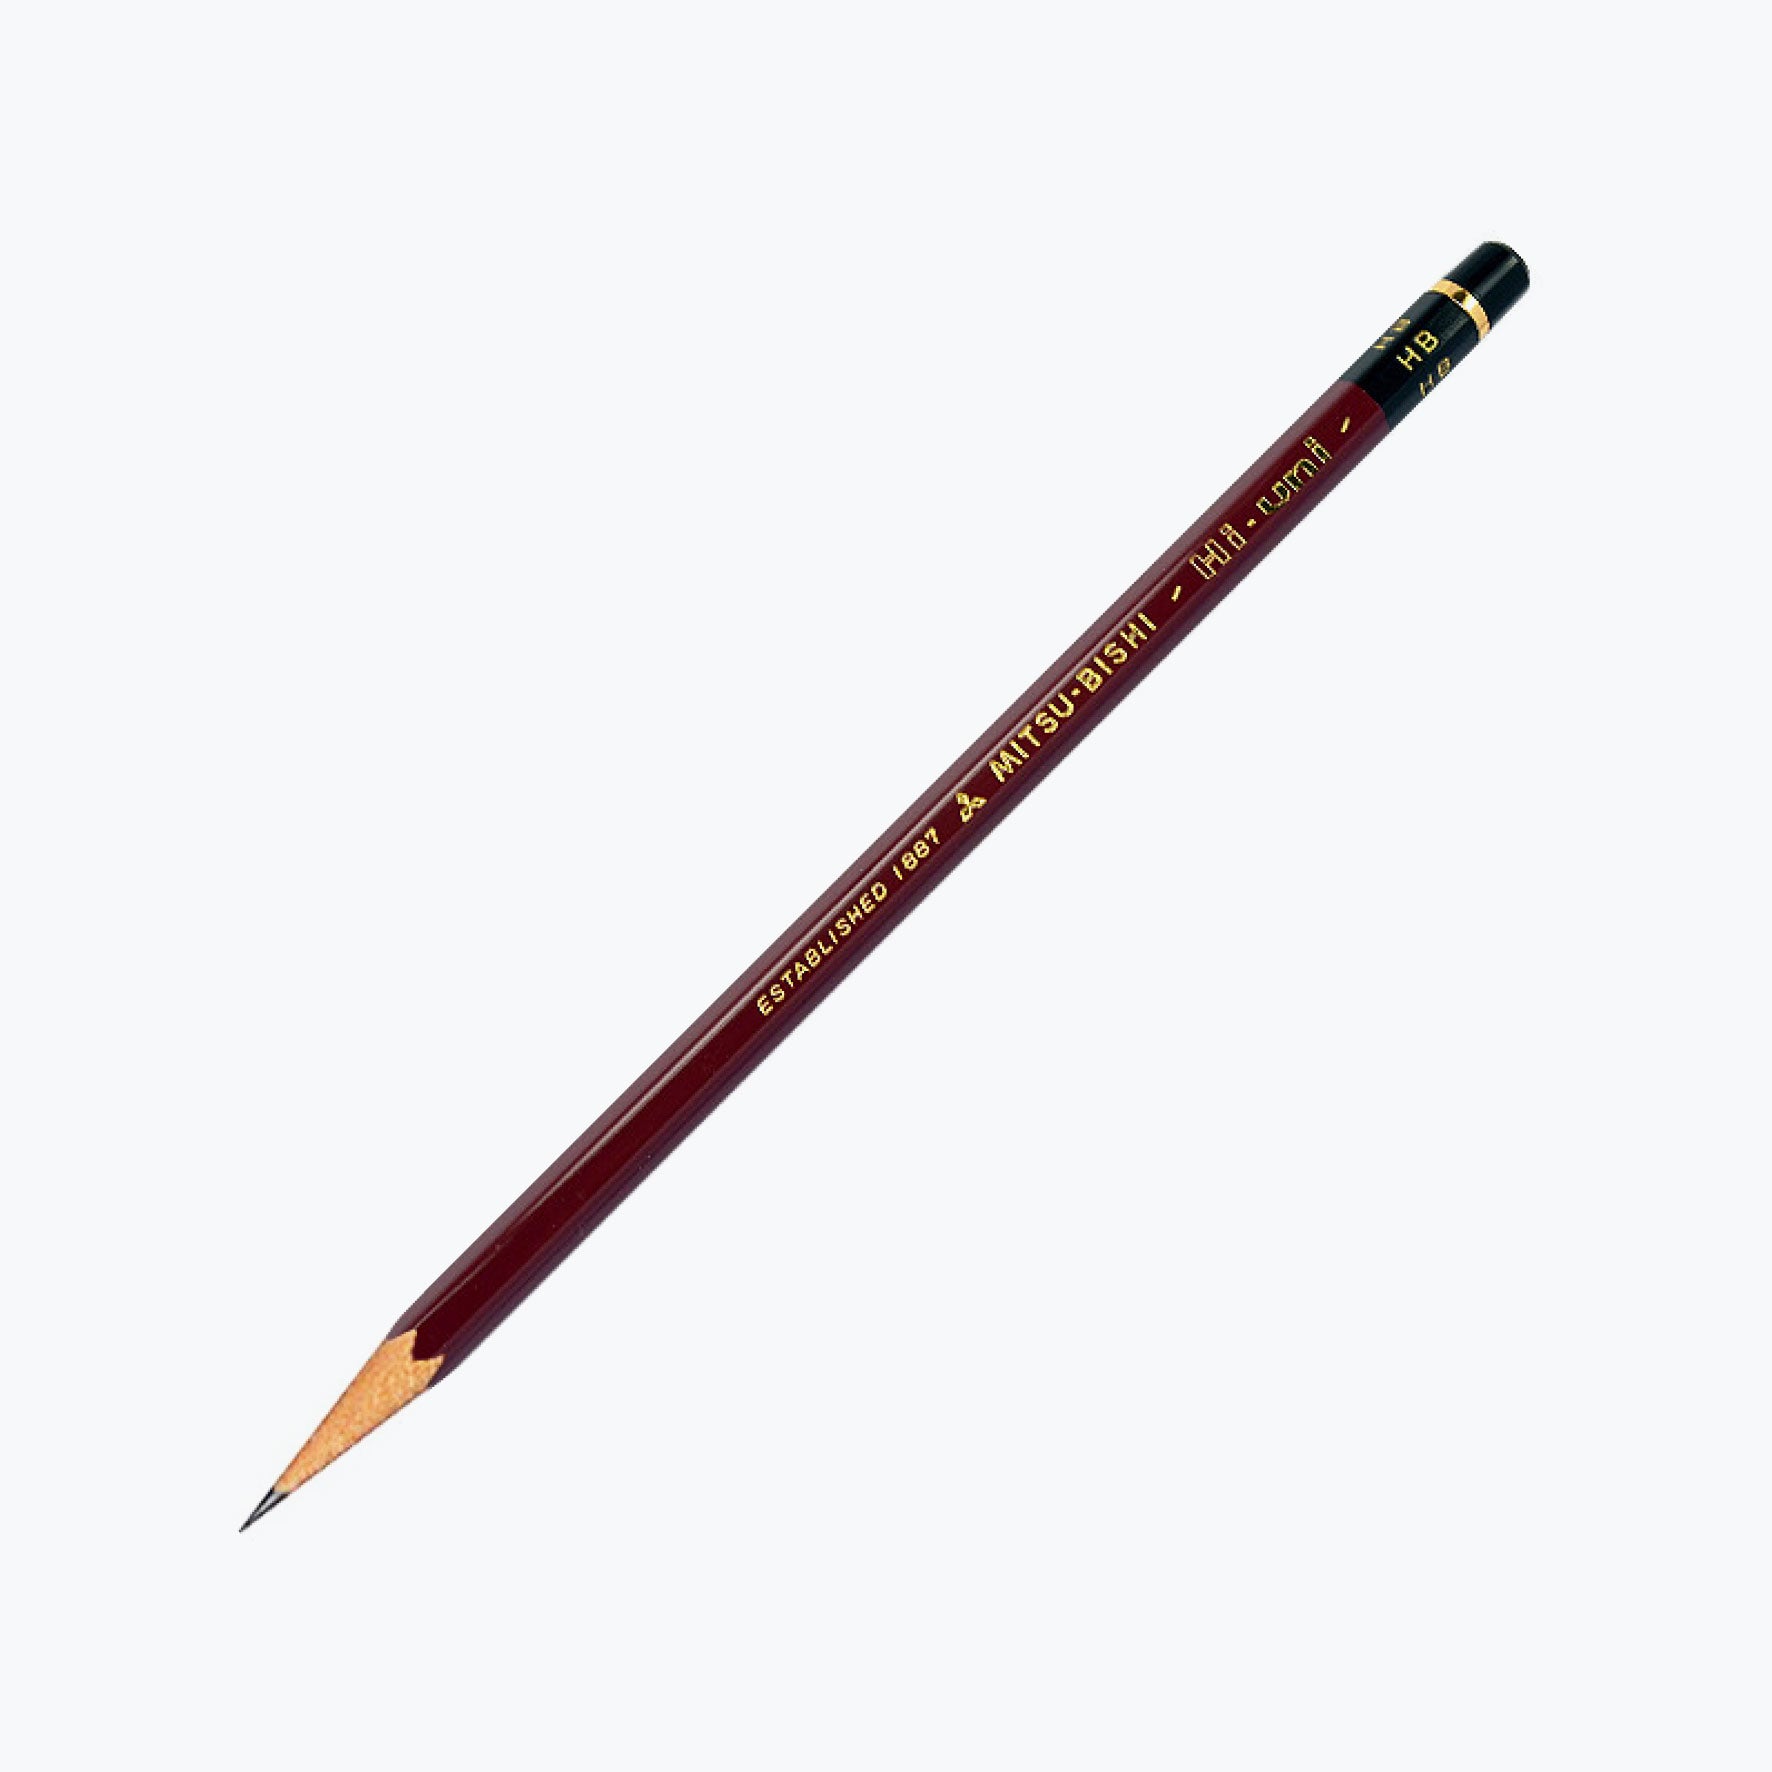 Mitsubishi - Pencil - Hi-Uni (Various Grades) - Pack of 2